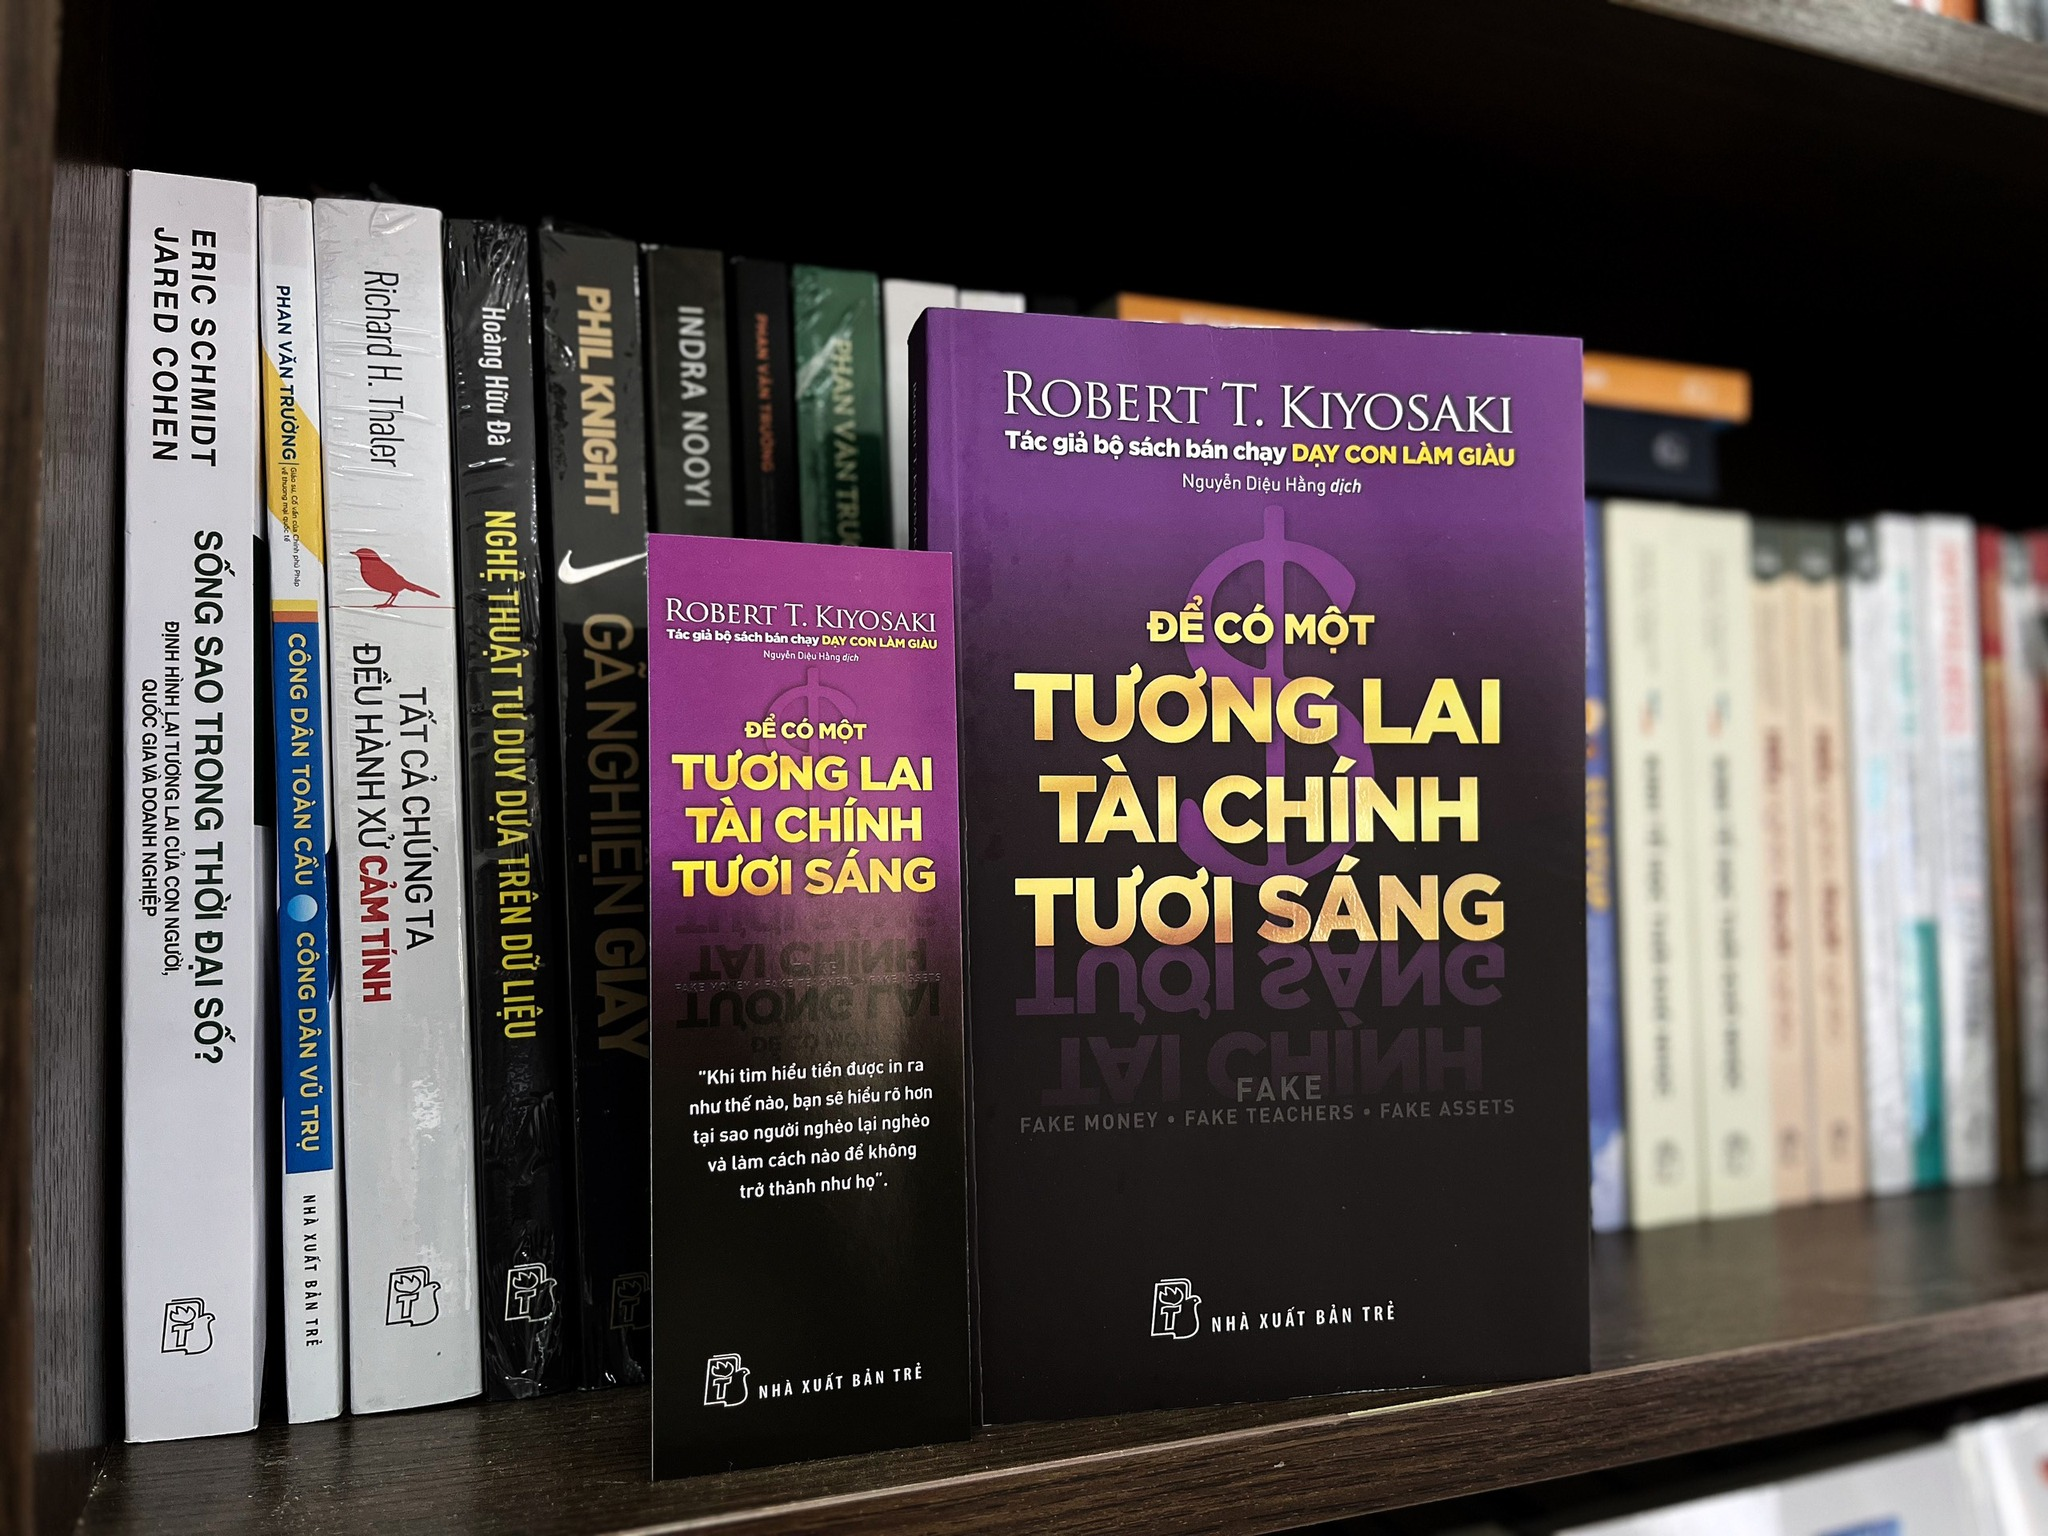 ĐỂ CÓ MỘT TƯƠNG LAI TÀI CHÍNH TƯƠI SÁNG - Robert T.Kiyosaki - Nguyễn Diệu Hằng dịch